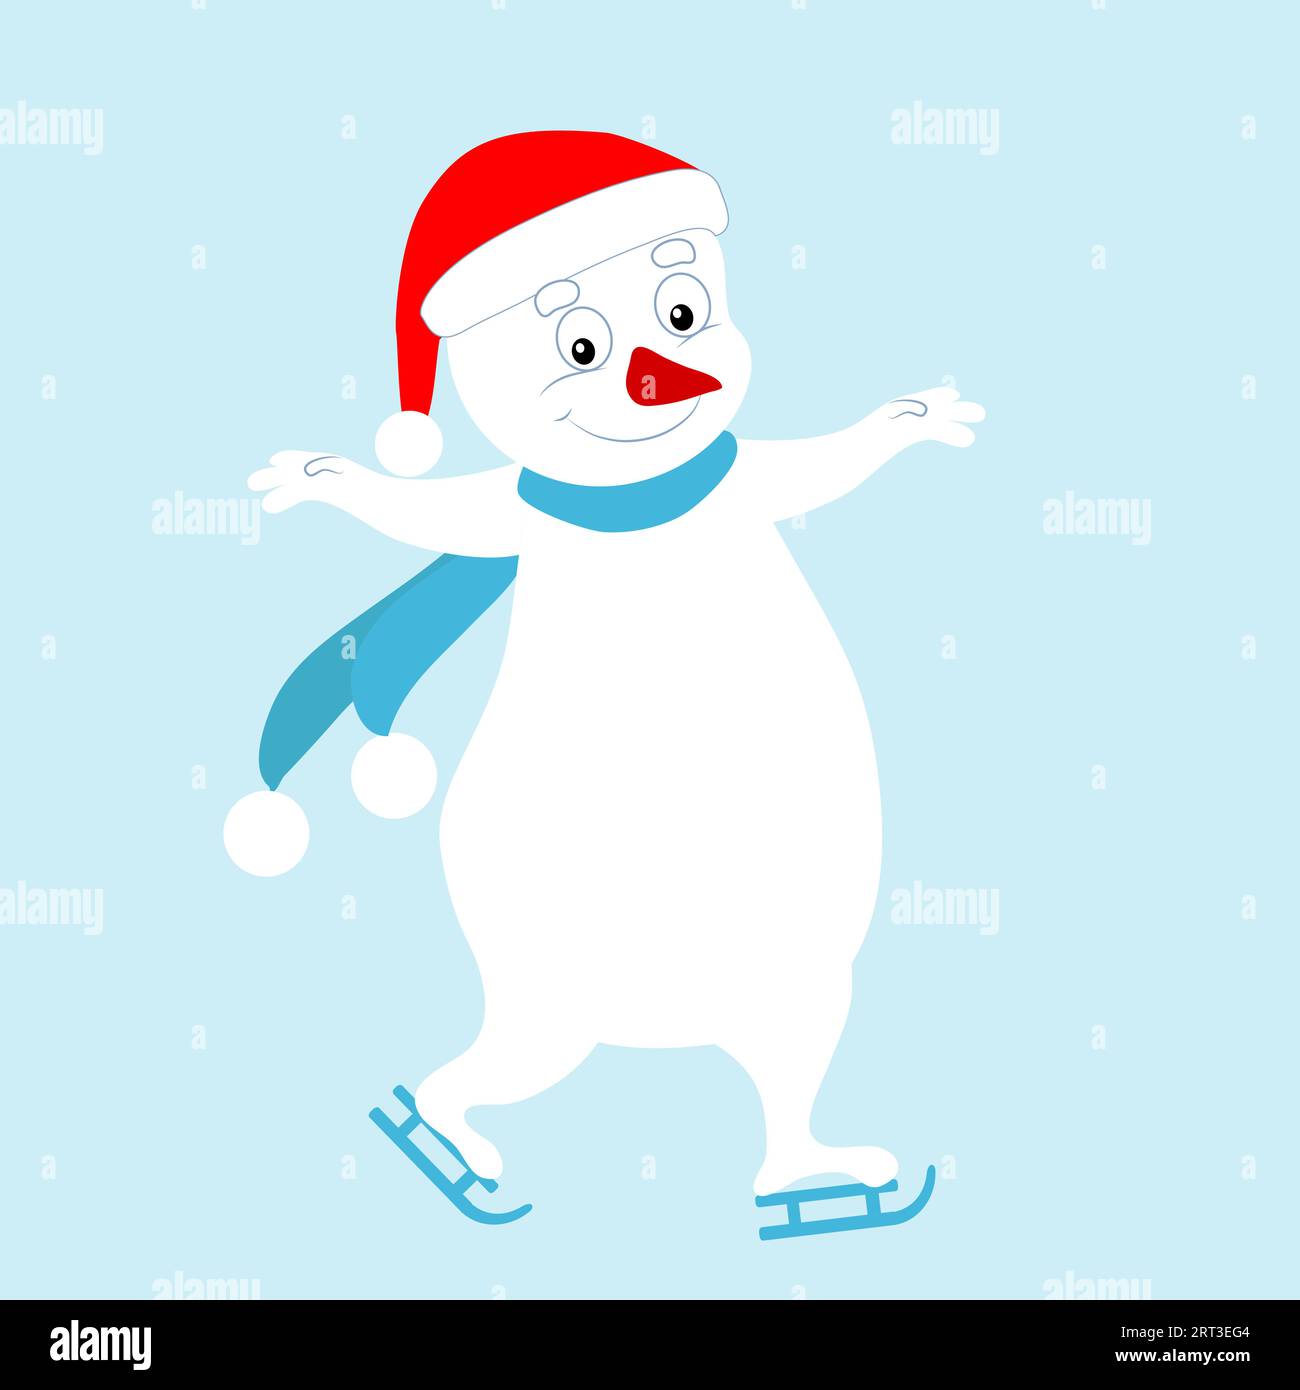 Le bonhomme de neige patine, il est joyeux et mignon. Personnage d'hiver de vecteur de dessin animé. Image pour cartes de Noël, boules de Noël et décoration de vacances. Illustration de Vecteur